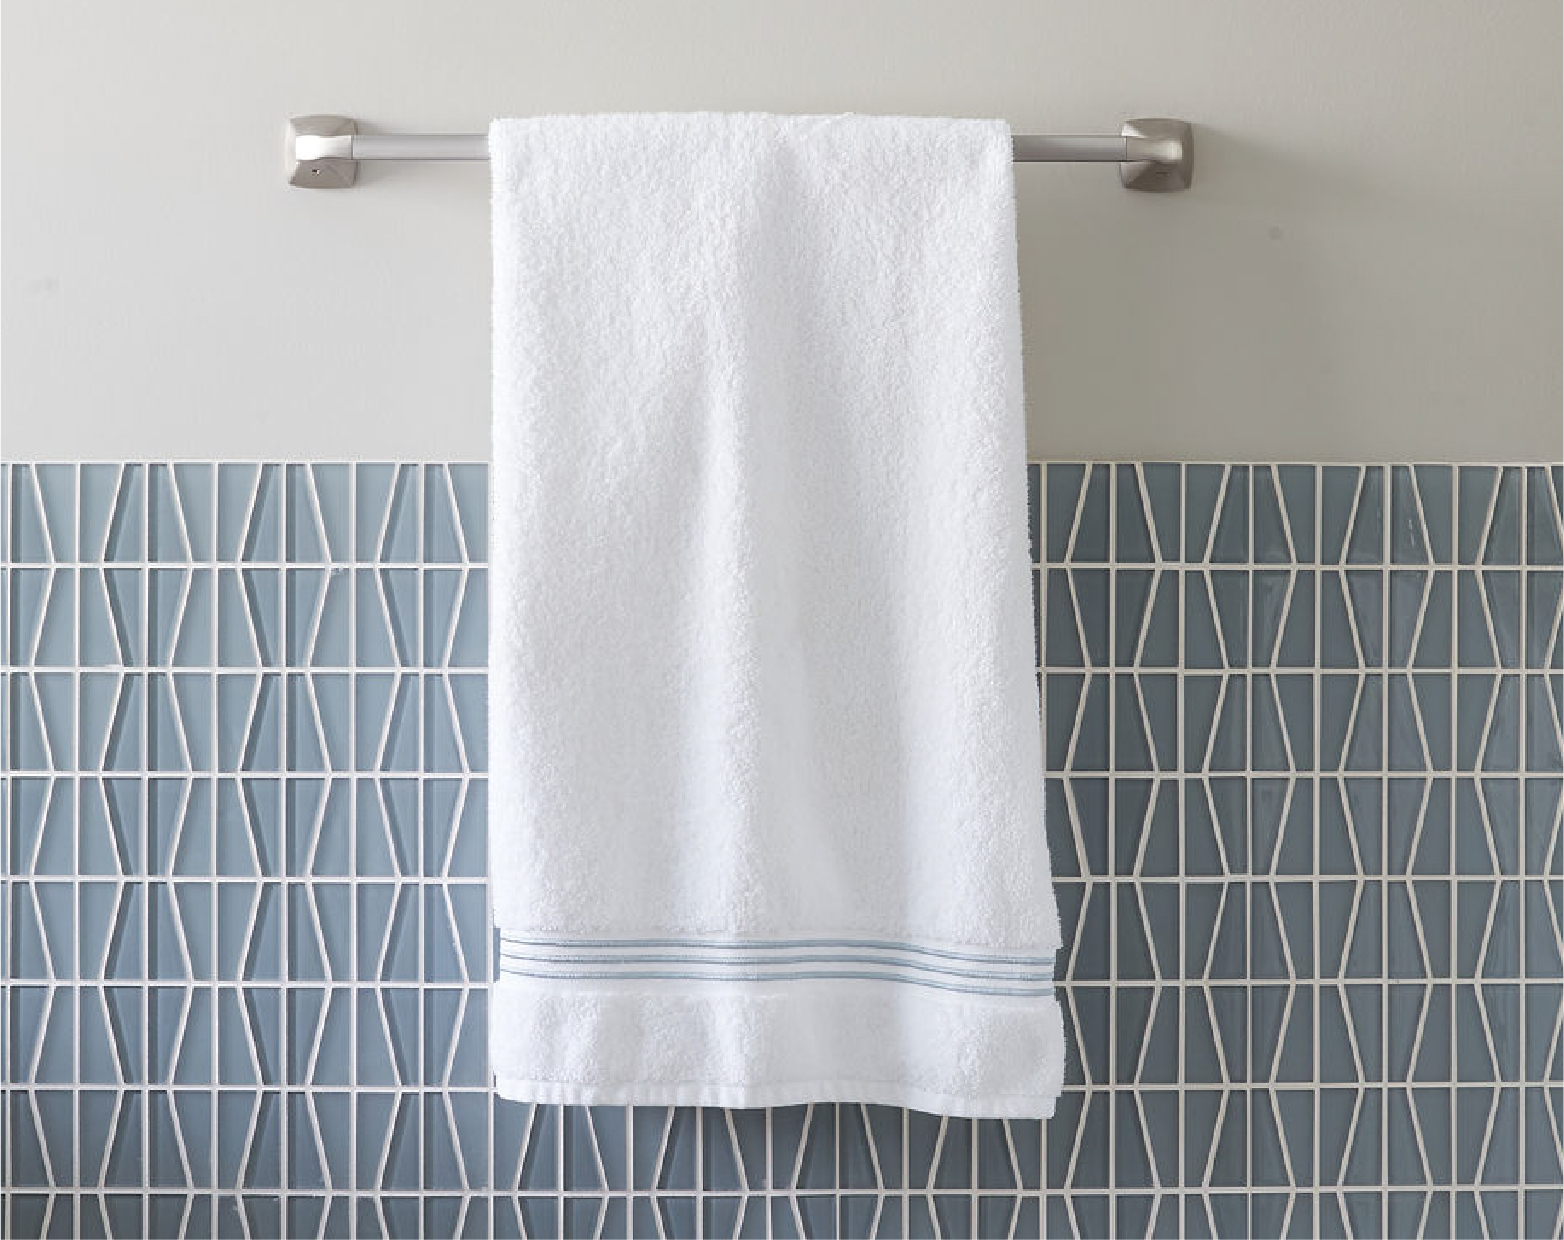 Towel.jpg